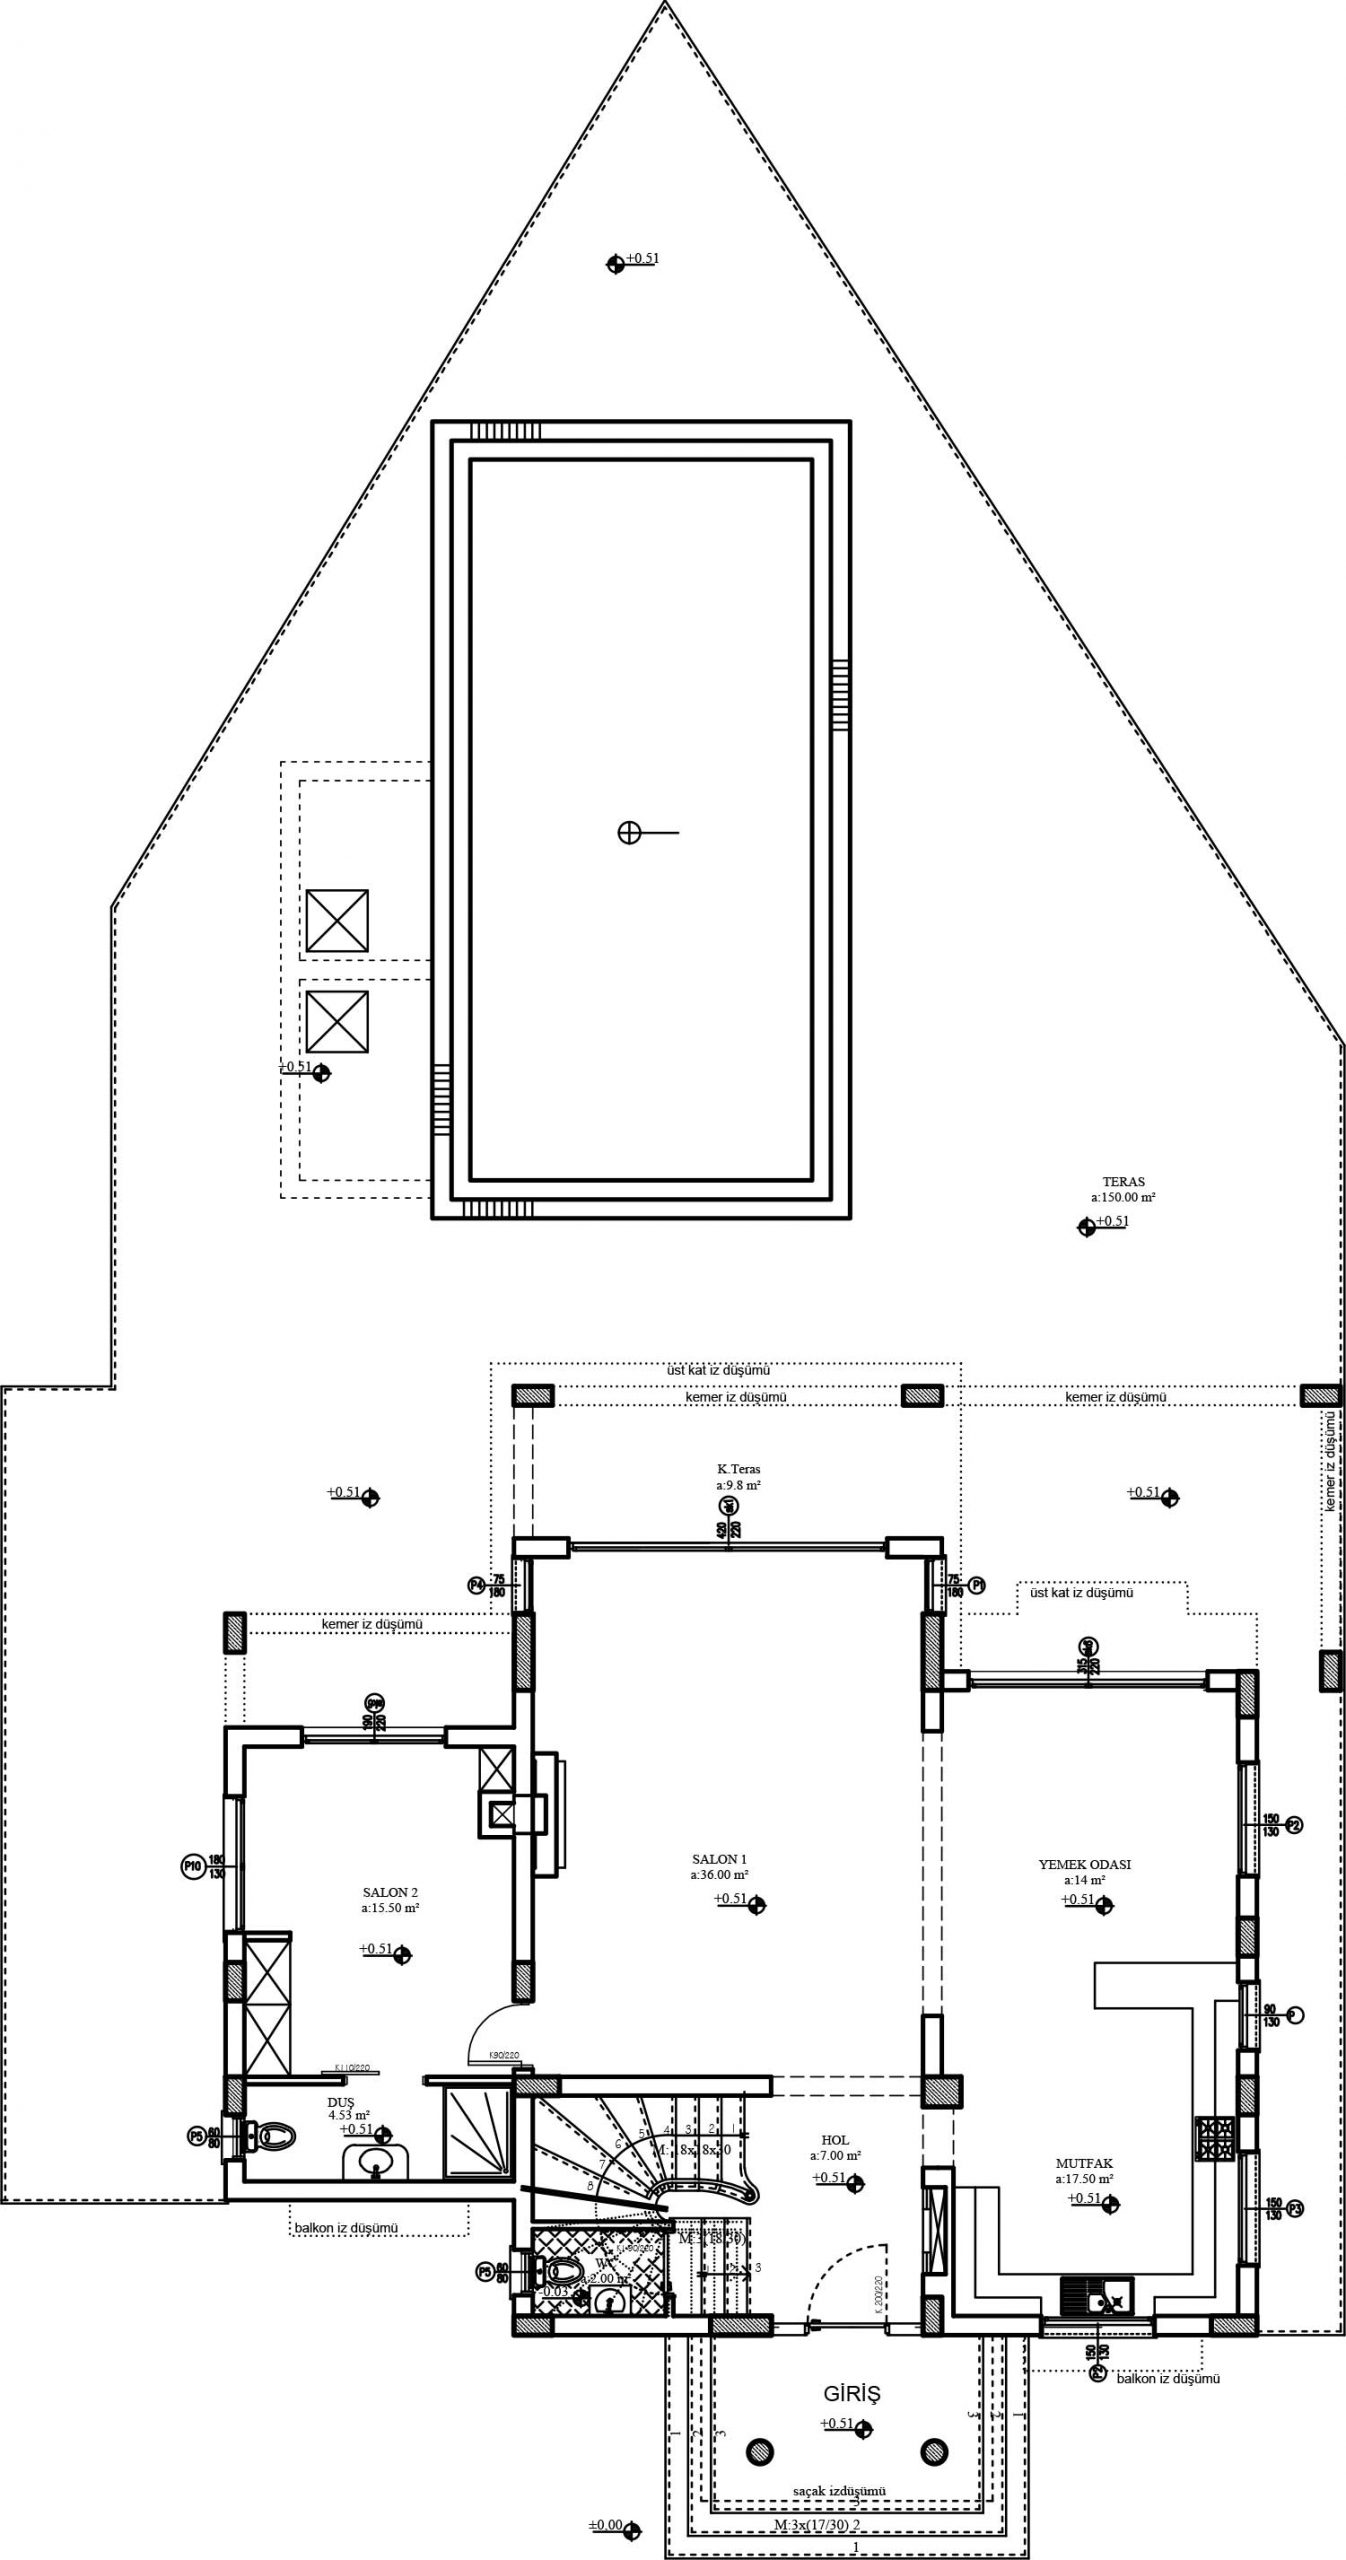 Floor plan - 5 bedroom villa / ground floor